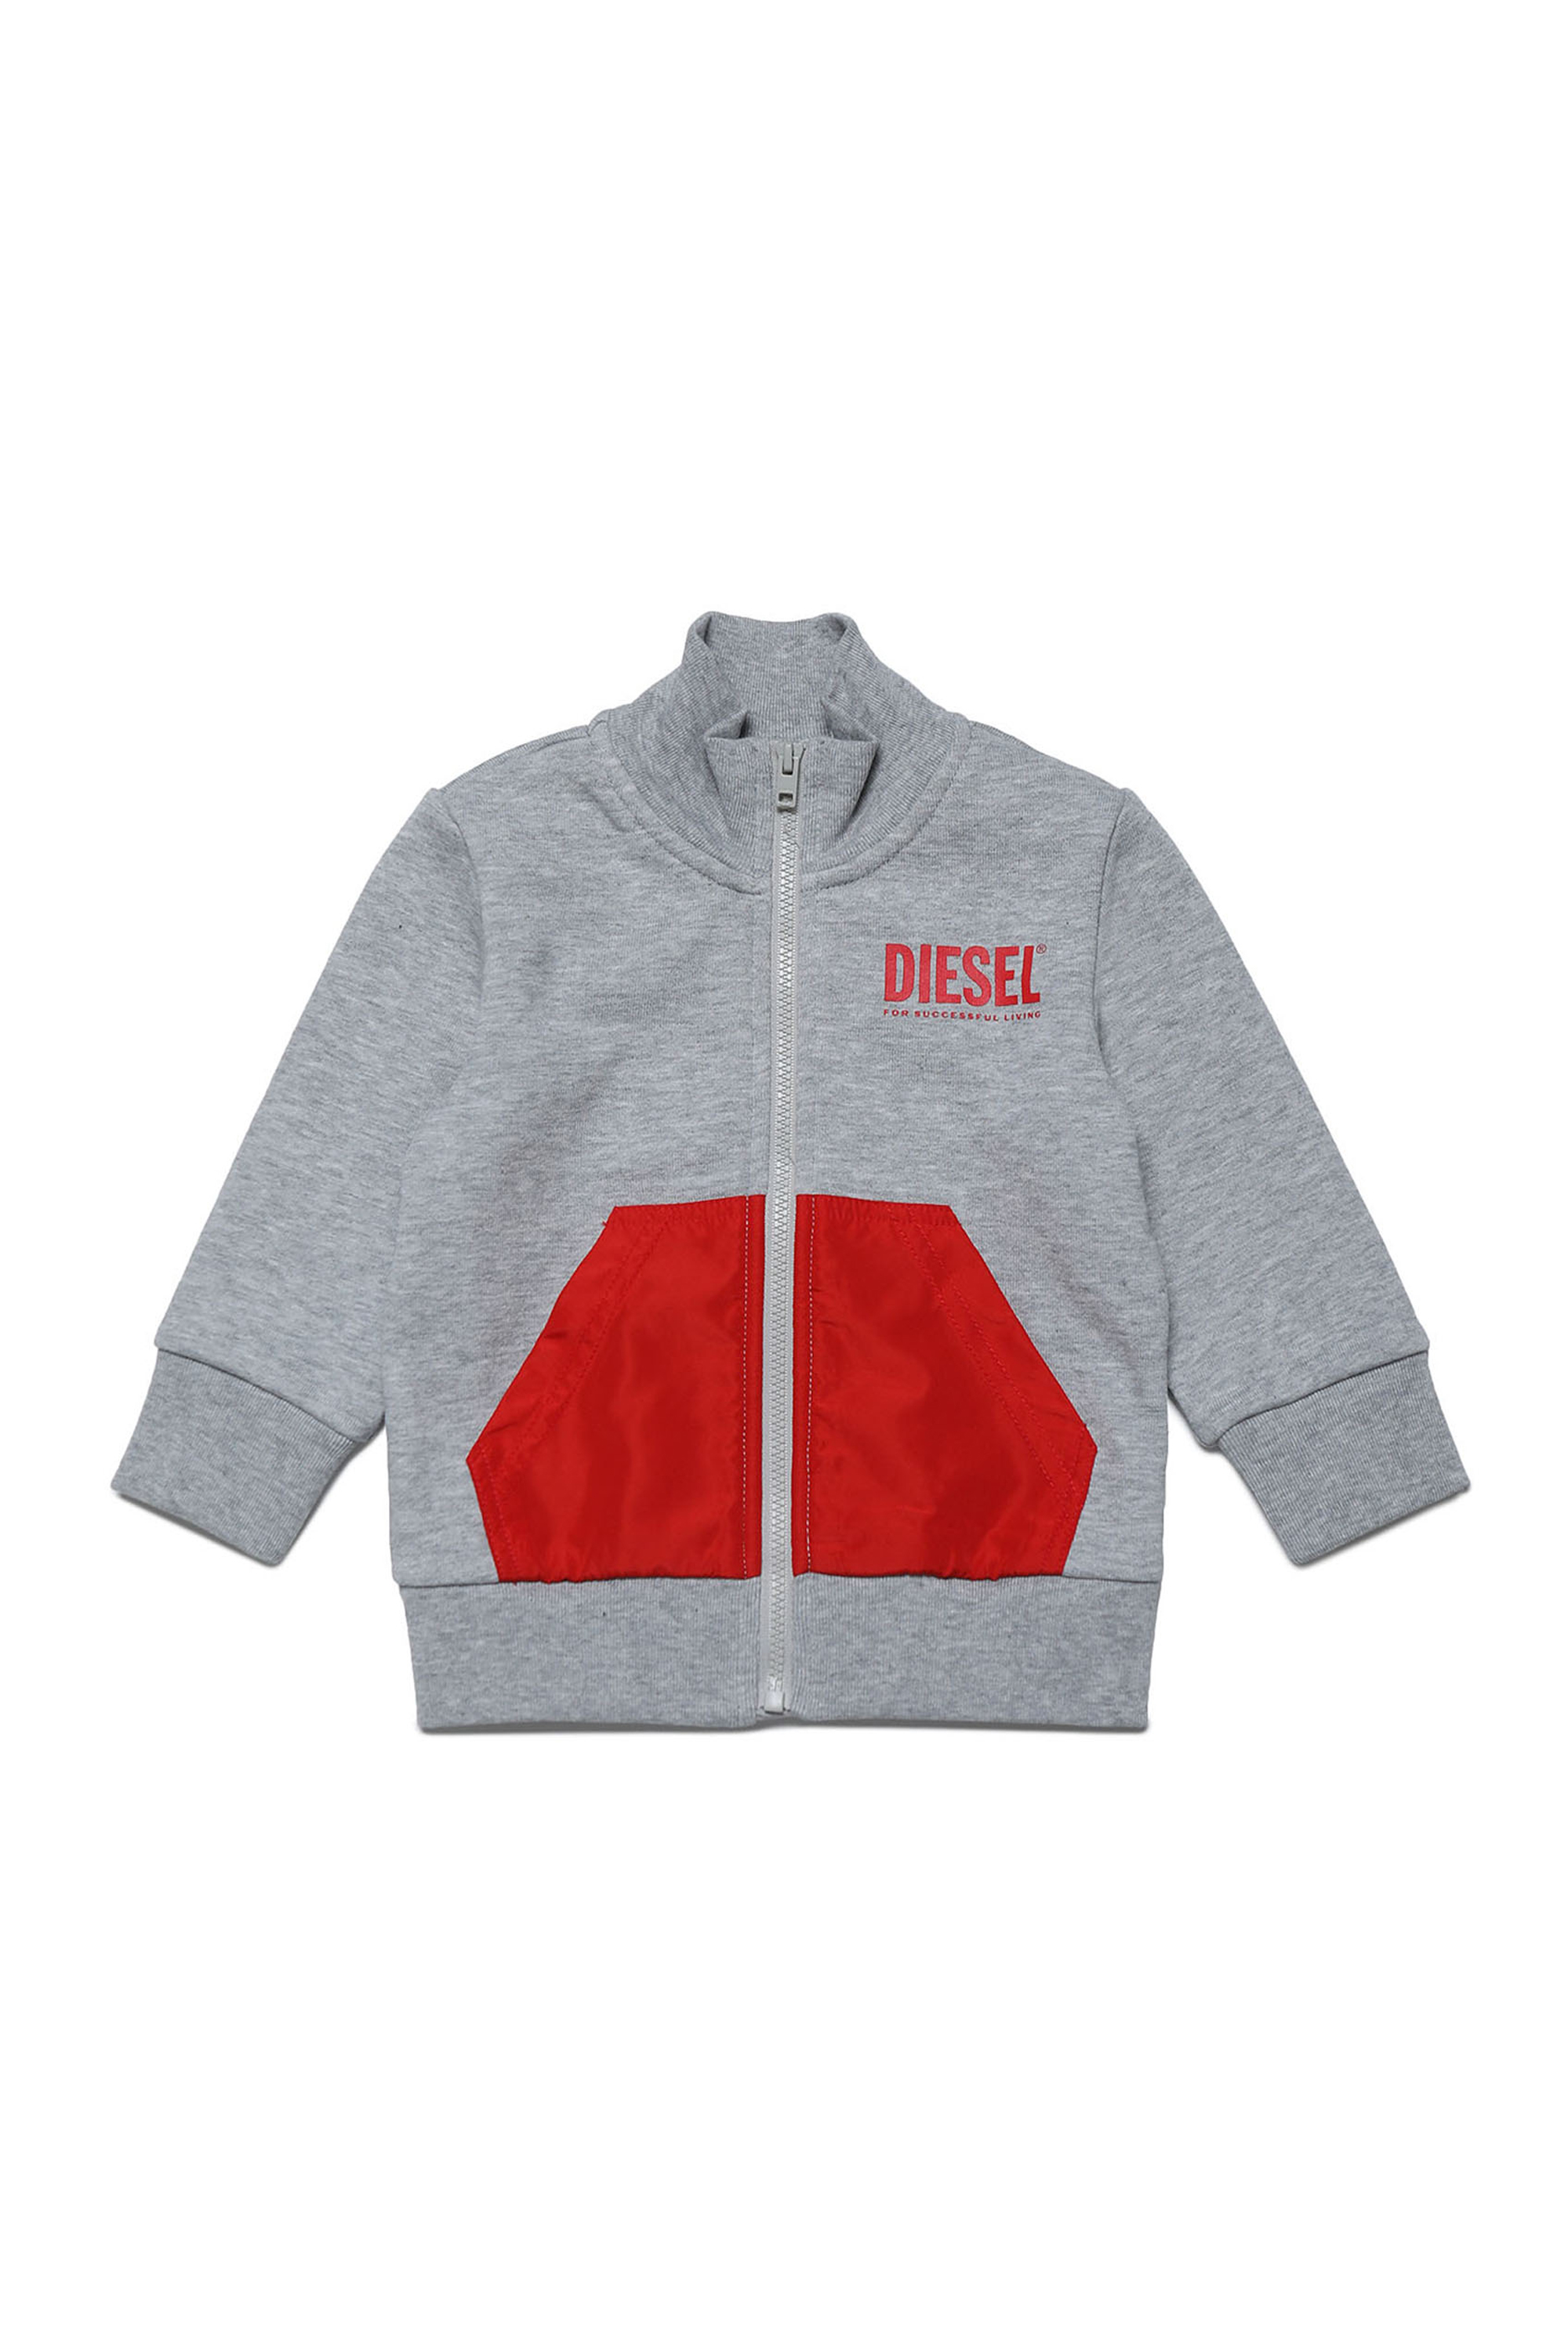 Diesel - MSAGNYB, Grey/Red - Image 1